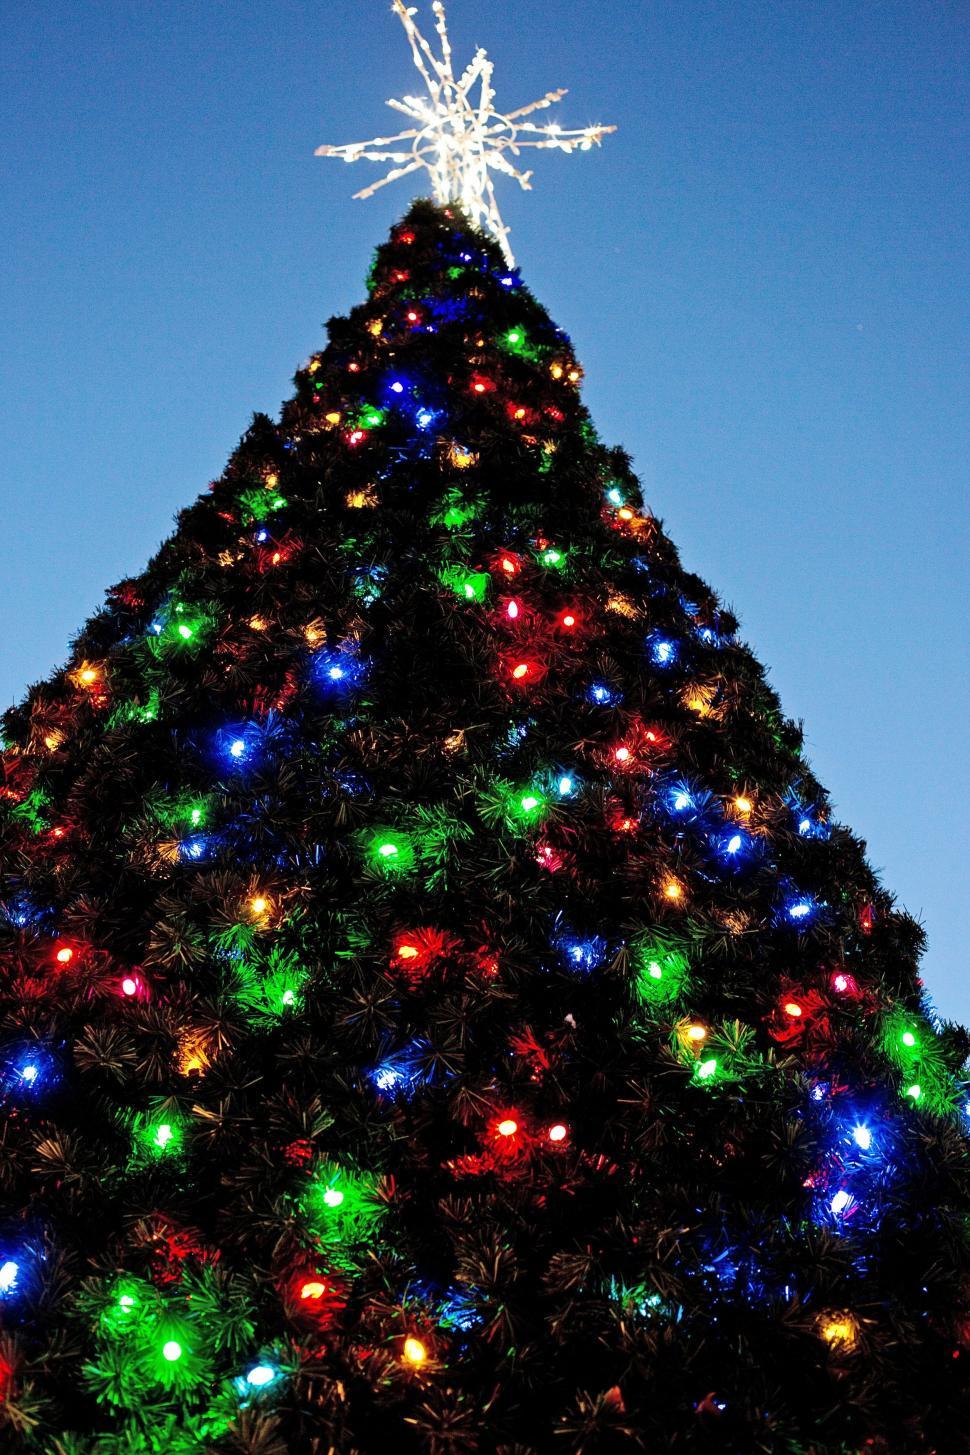 Free Image of Night View of Christmas Tree  